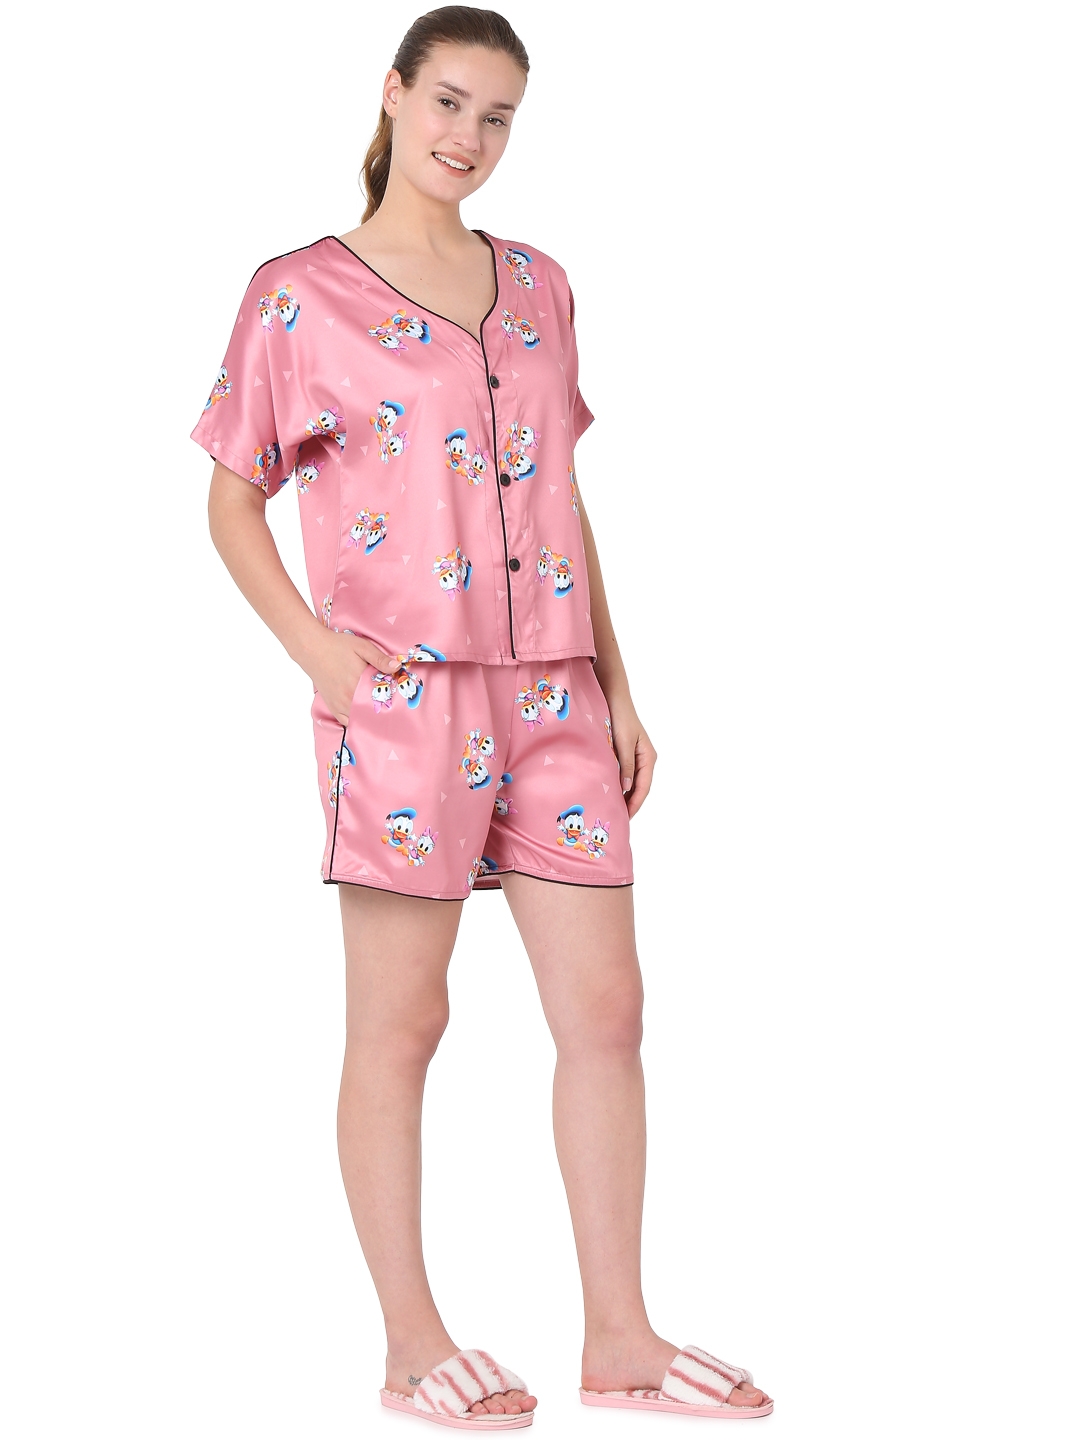 Smarty Pants women's silk satin mauve pink color cartoon print shorts &  shirt night suit.